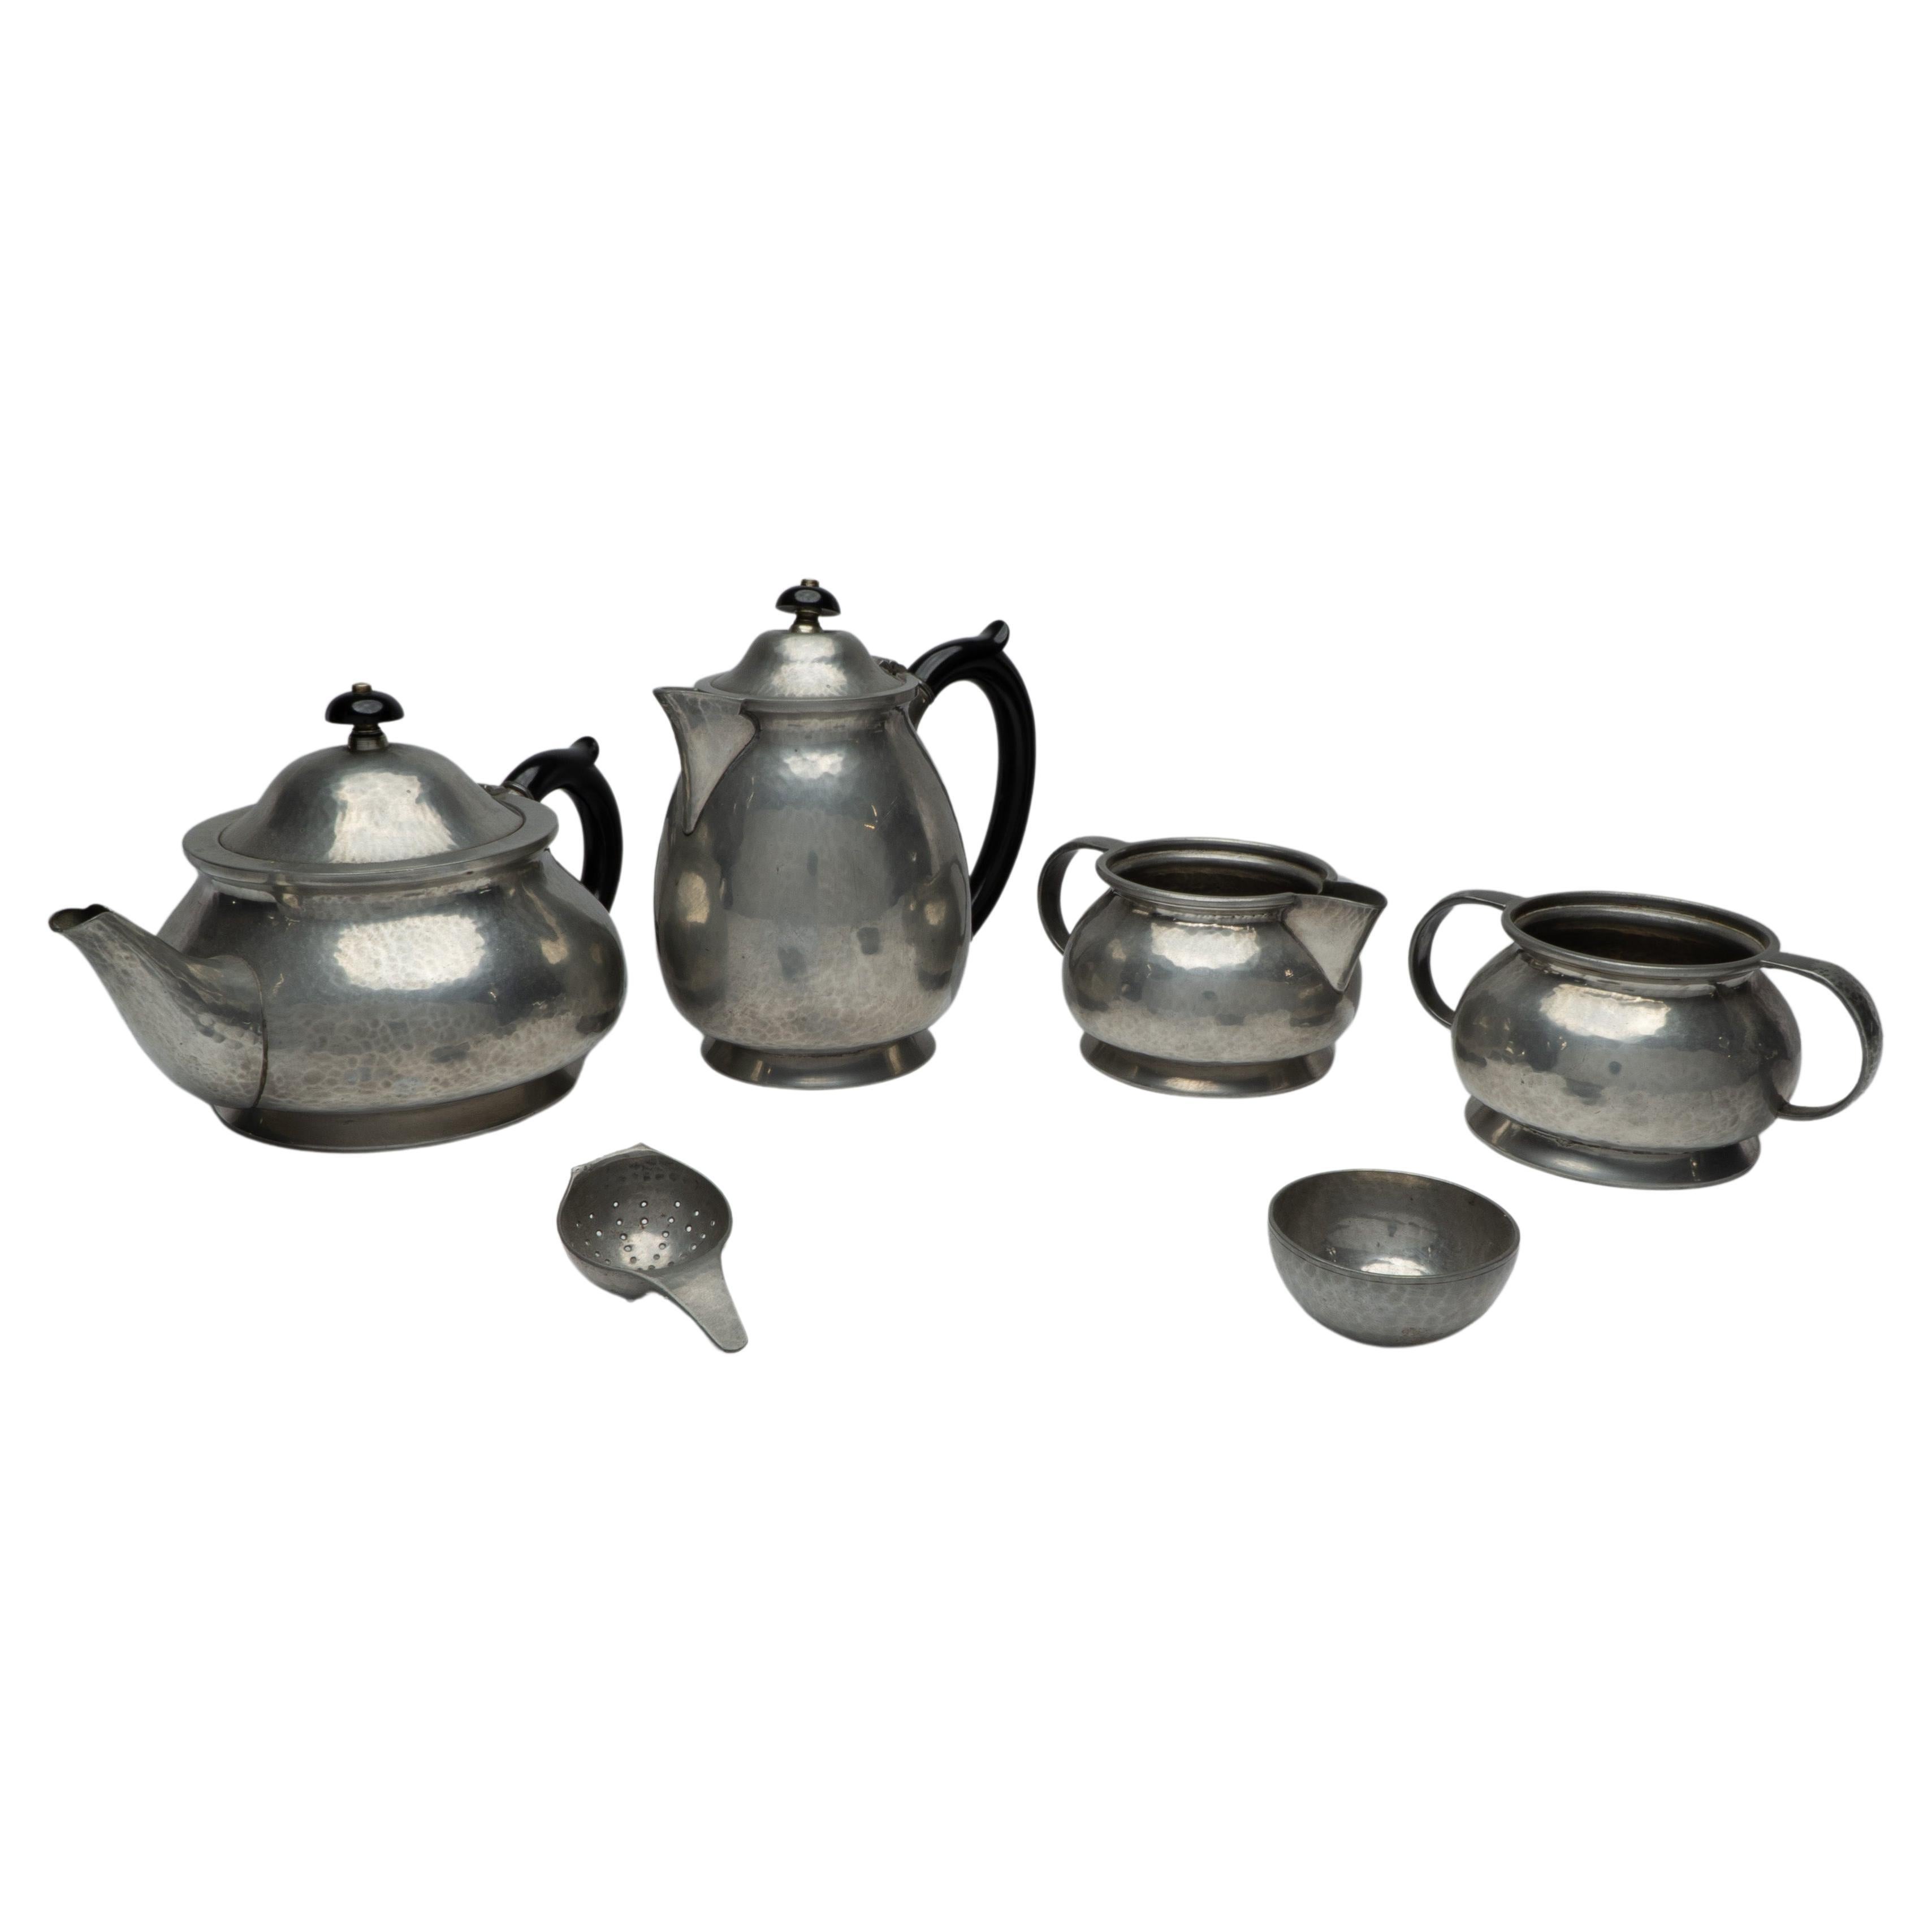 1910s Serveware, Ceramics, Silver and Glass